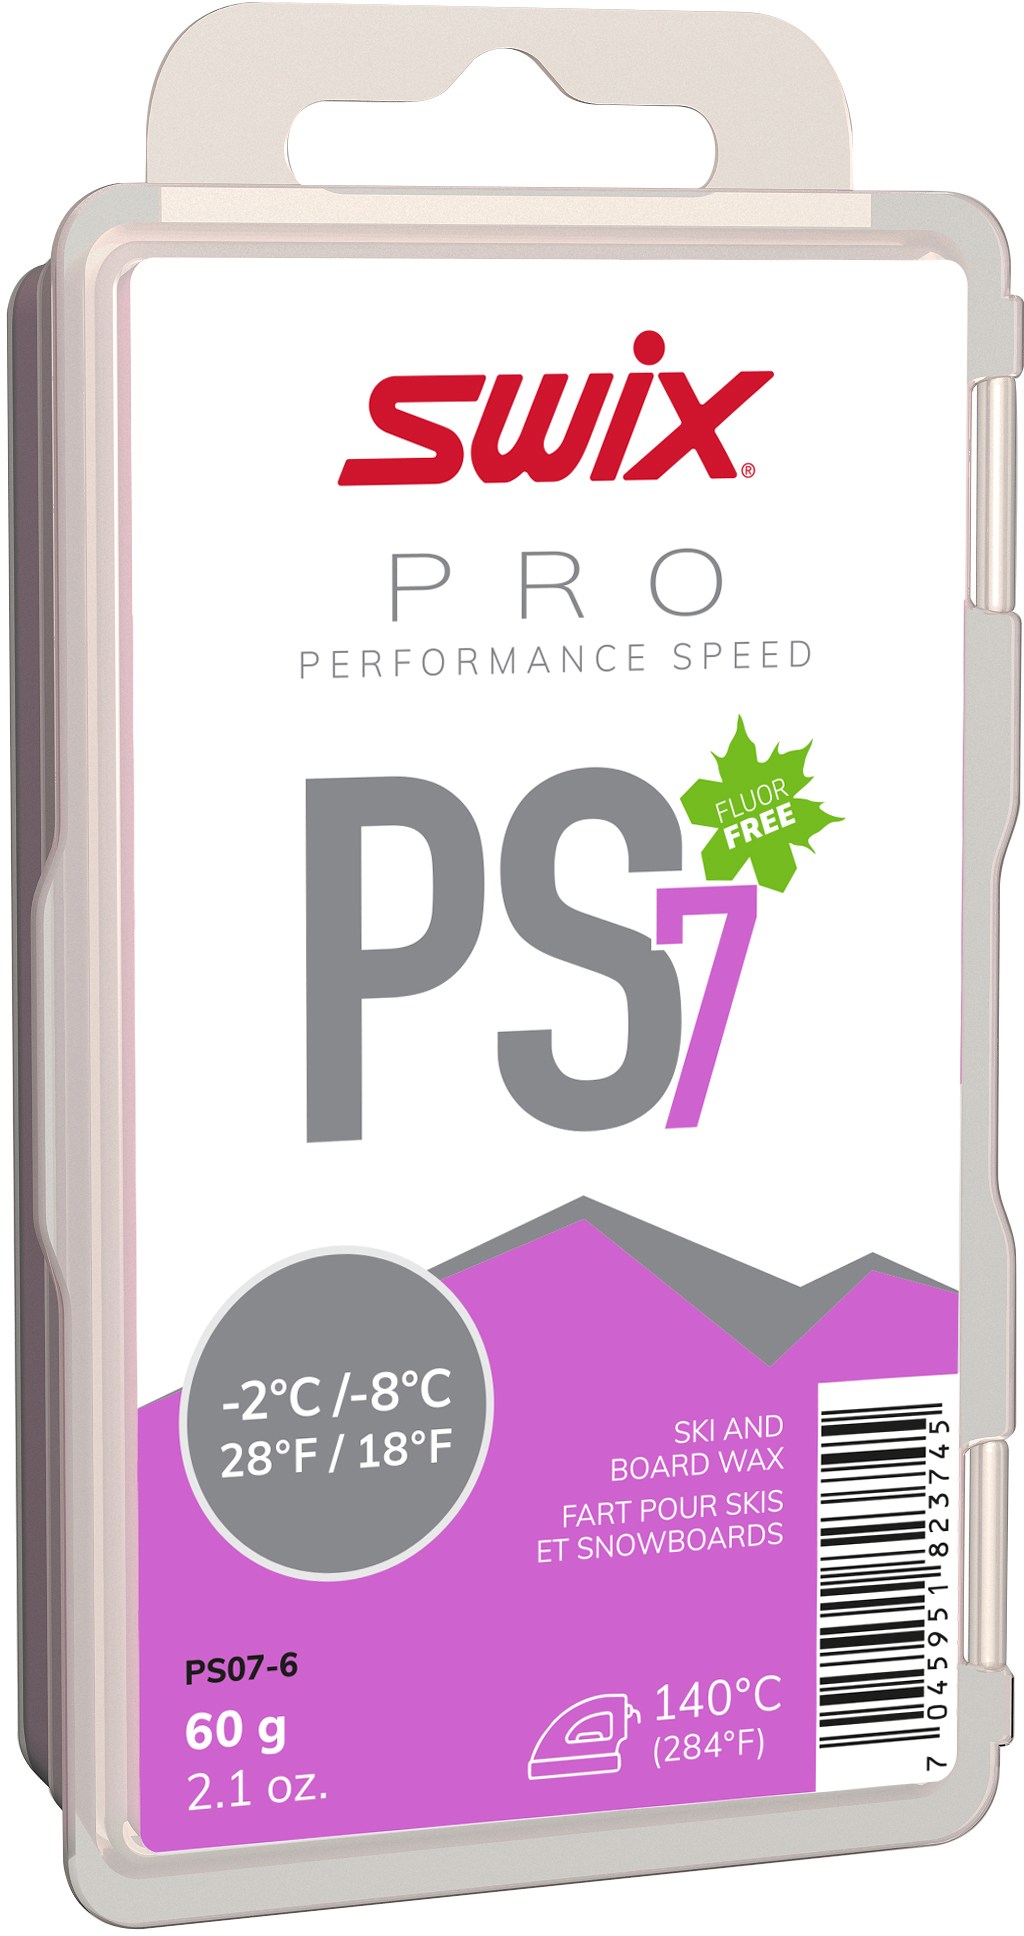 PS7 Фиолетовый воск для температуры от 18 до 28 градусов F — 60 г Swix performance 28 см 12209294